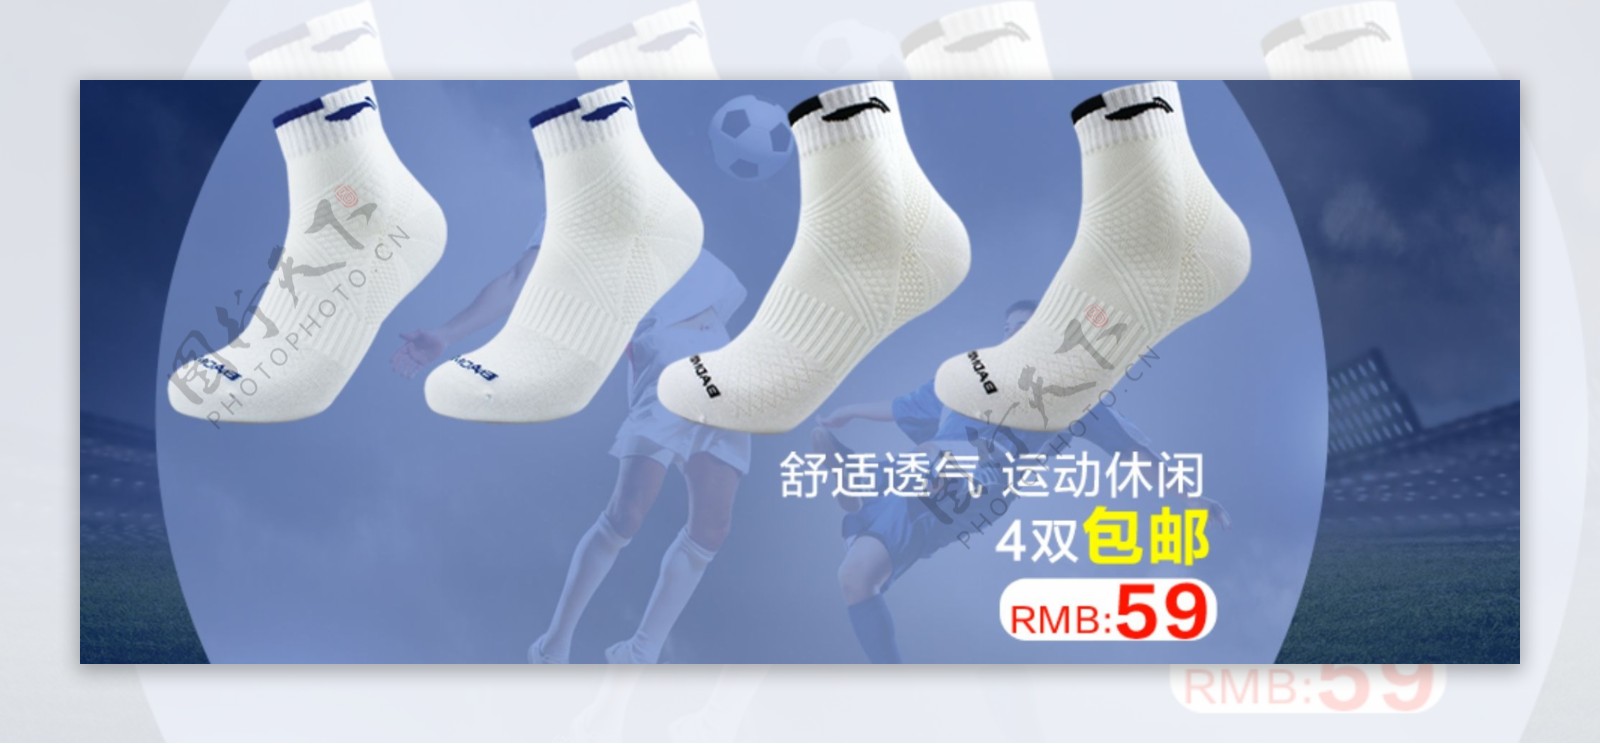 淘宝袜子广告设计